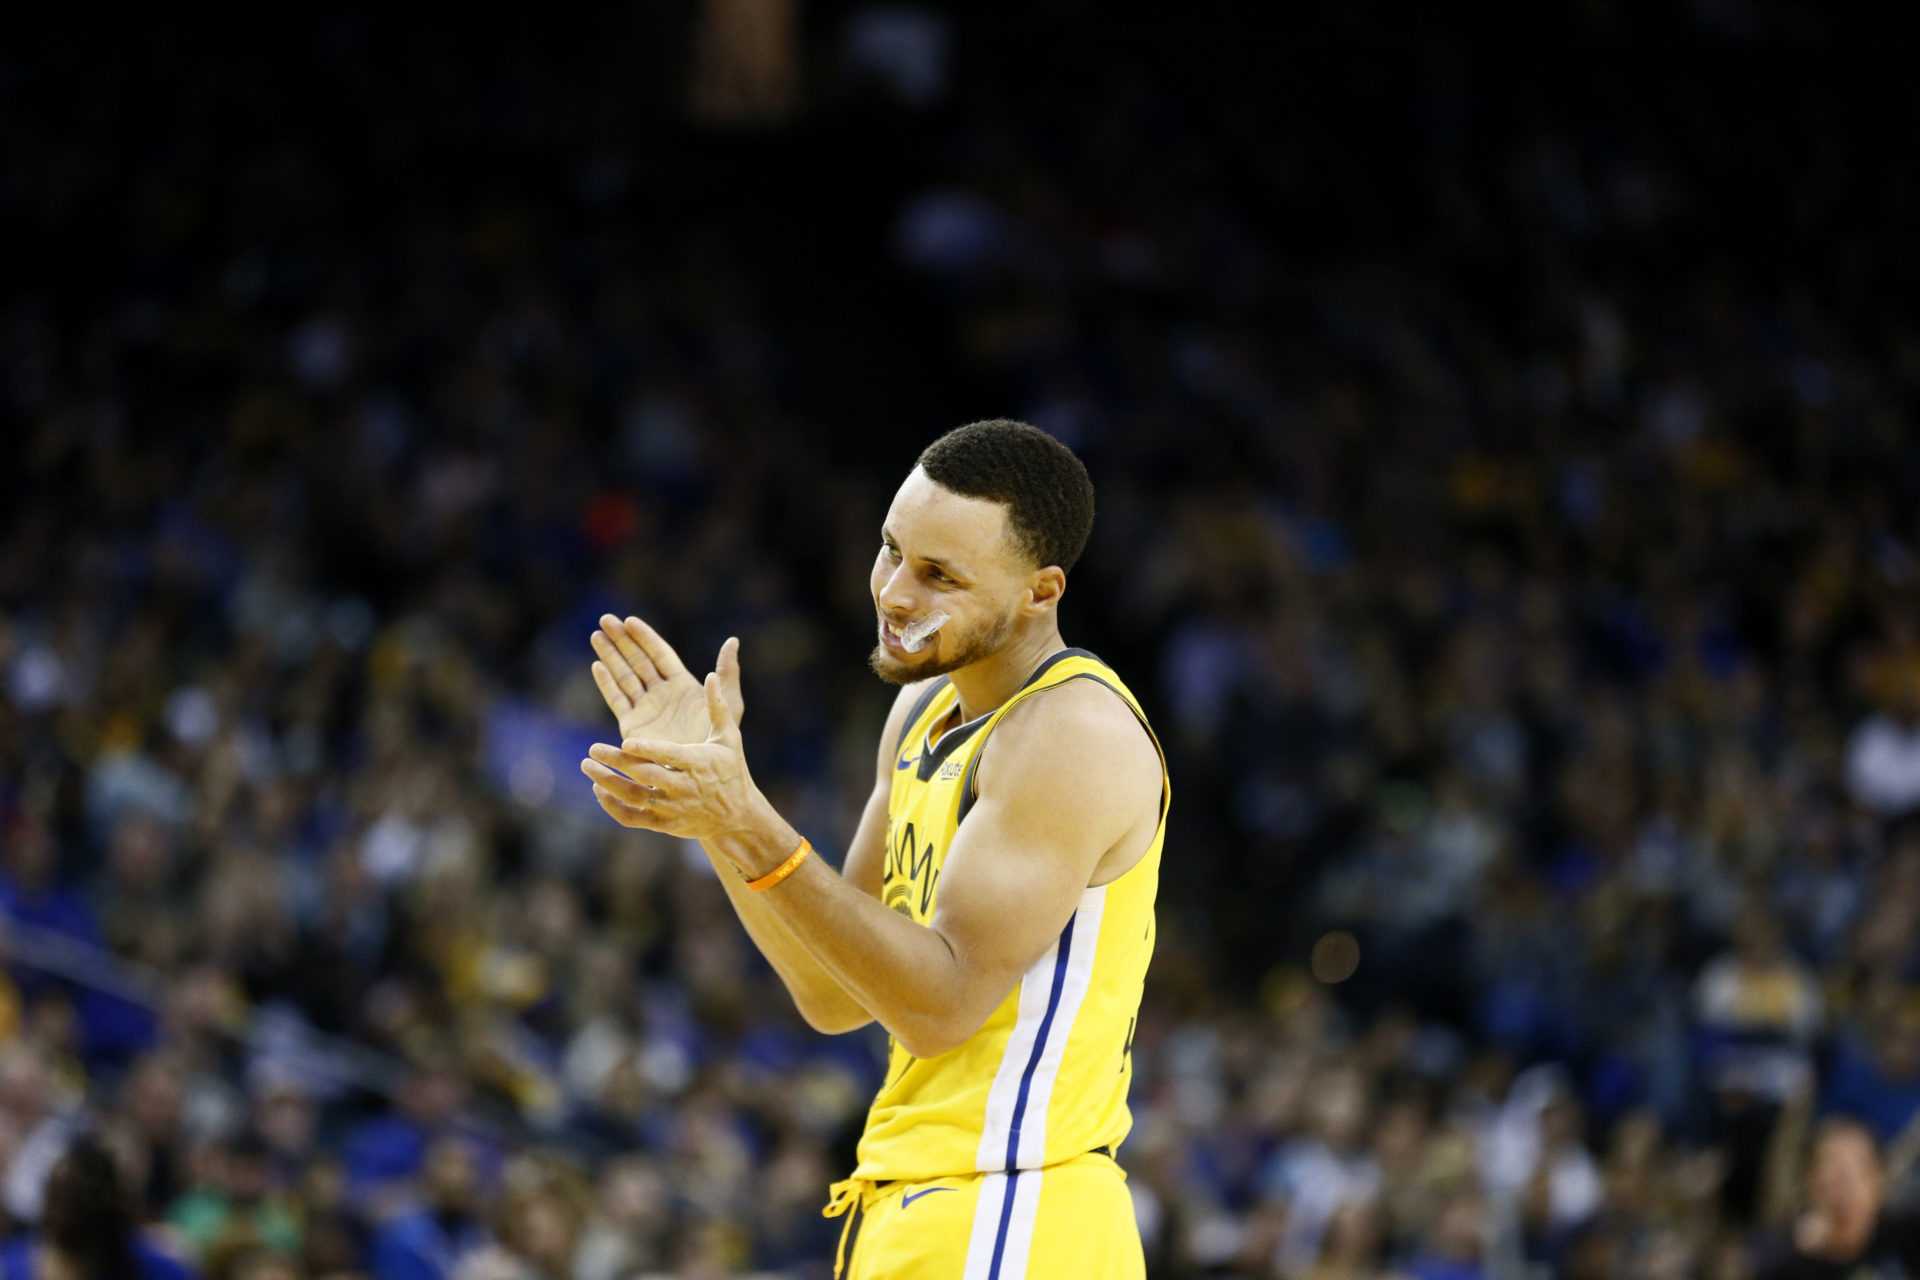 Stephen Curry jouera-t-il ce soir?  Golden State Warriors vs Chicago Bulls: mises à jour des blessures, composition et prédiction de jeu